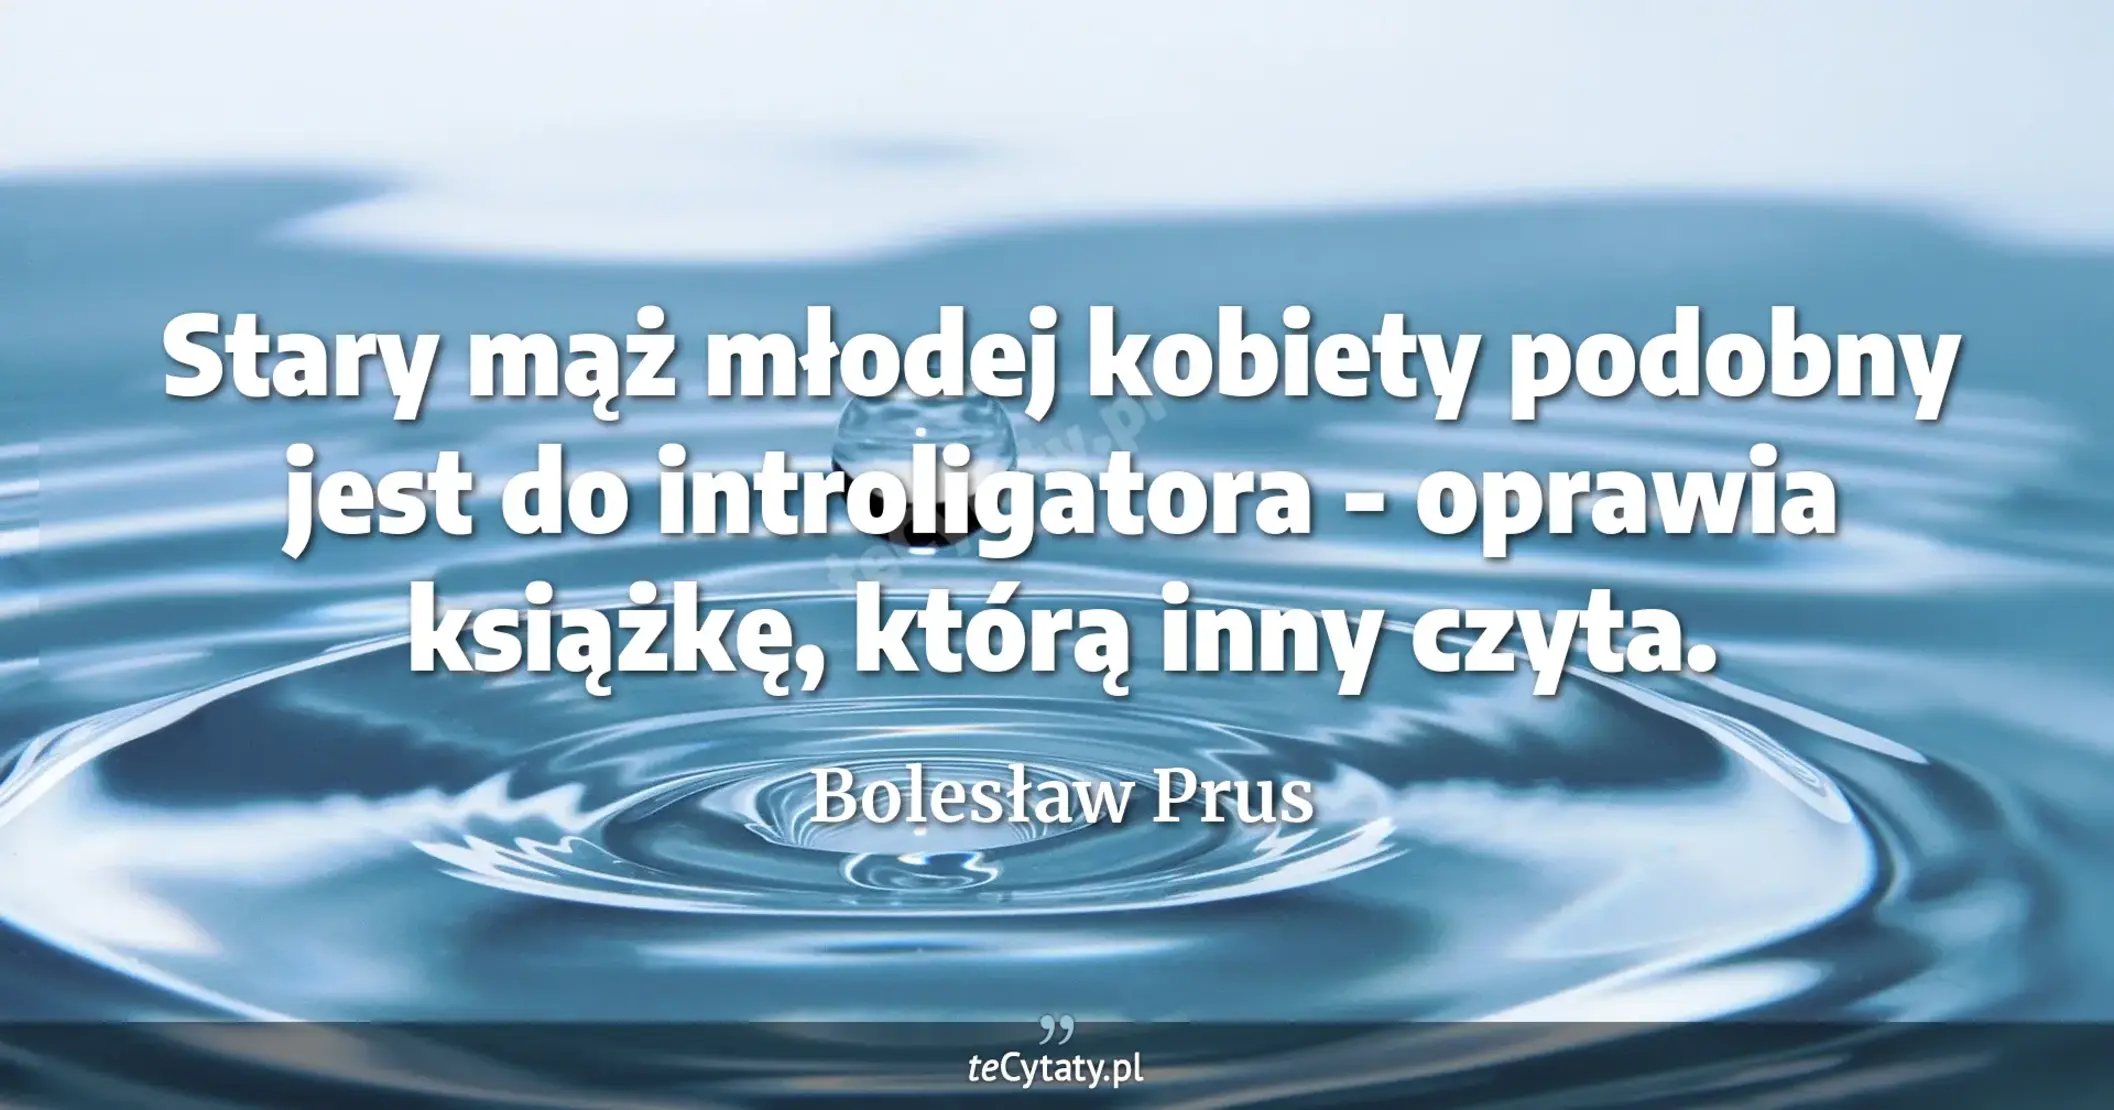 Stary mąż młodej kobiety podobny jest do introligatora - oprawia książkę, którą inny czyta. - Bolesław Prus